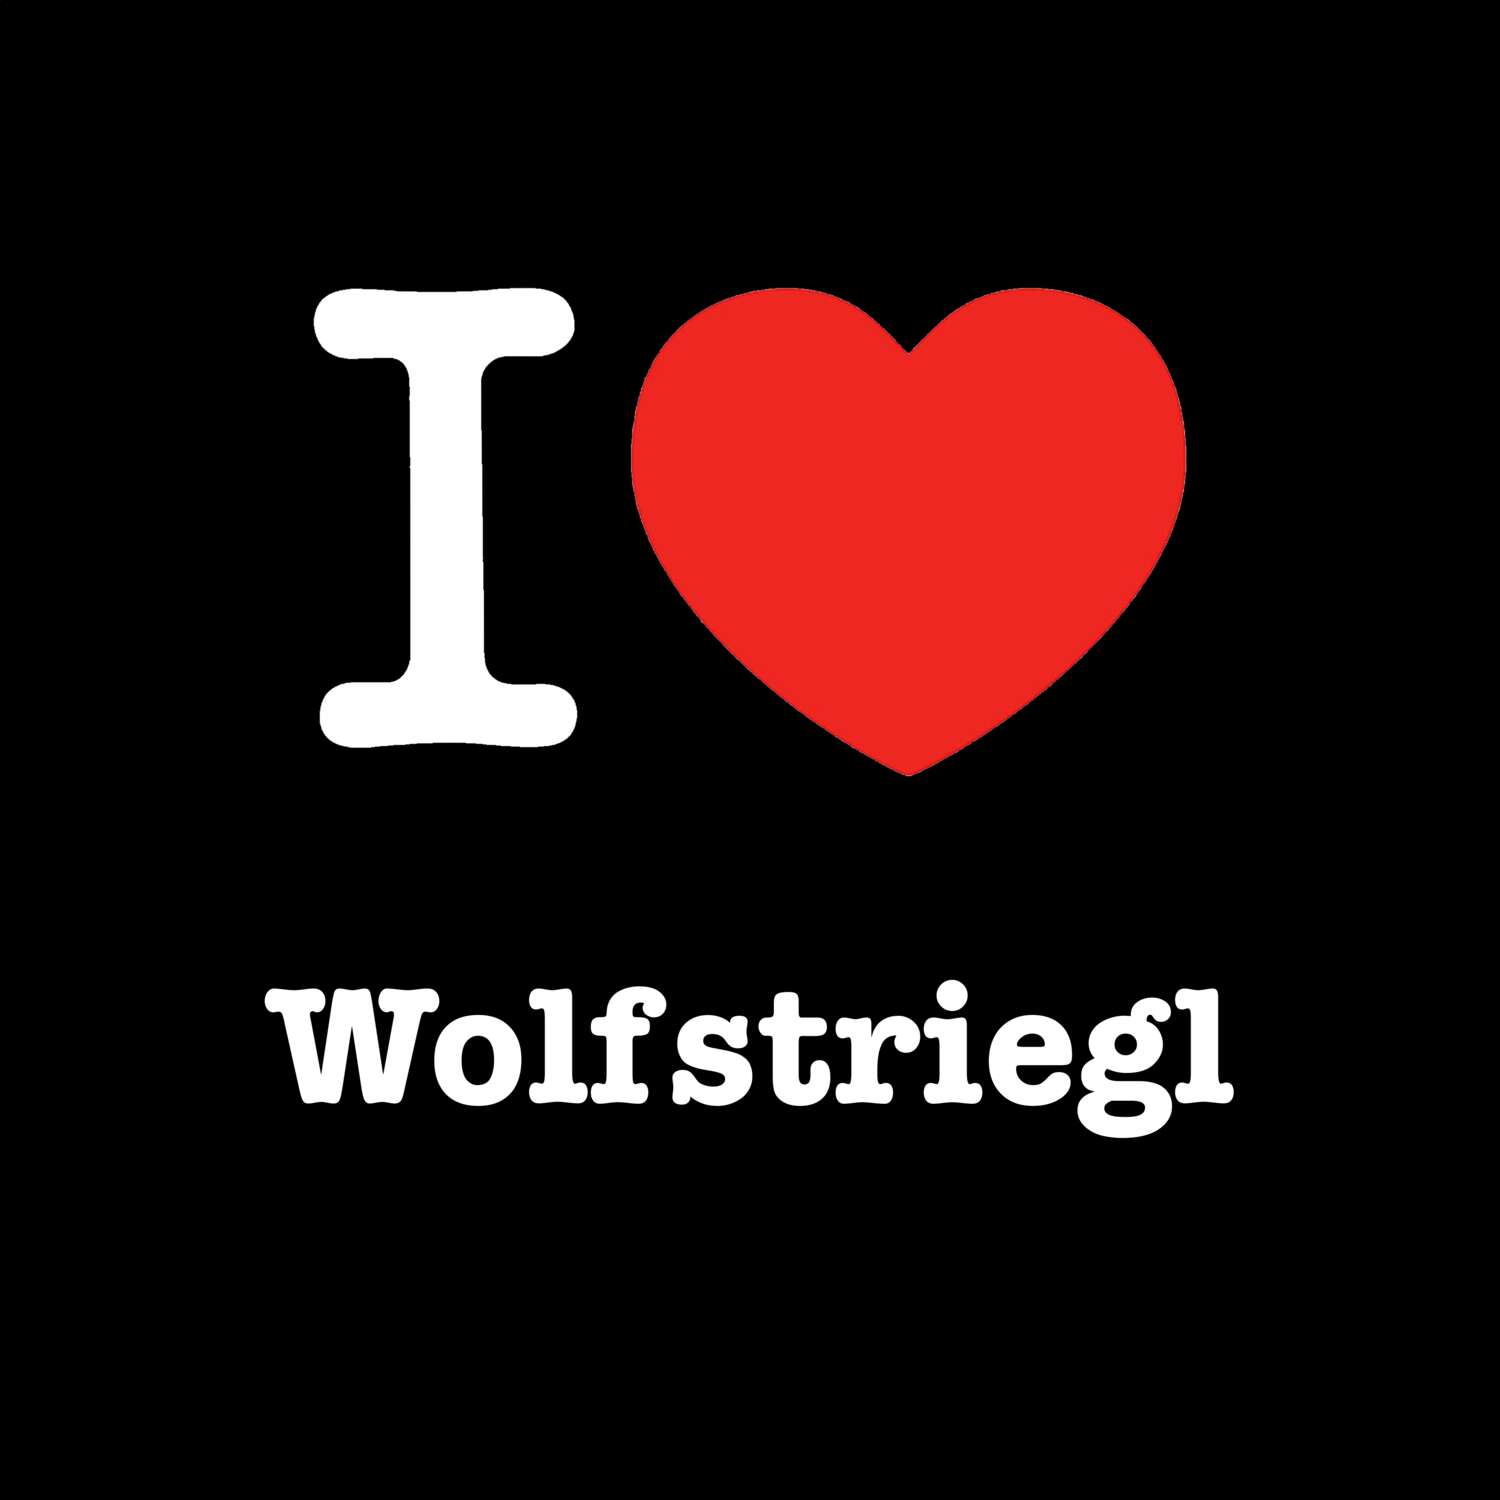 Wolfstriegl T-Shirt »I love«